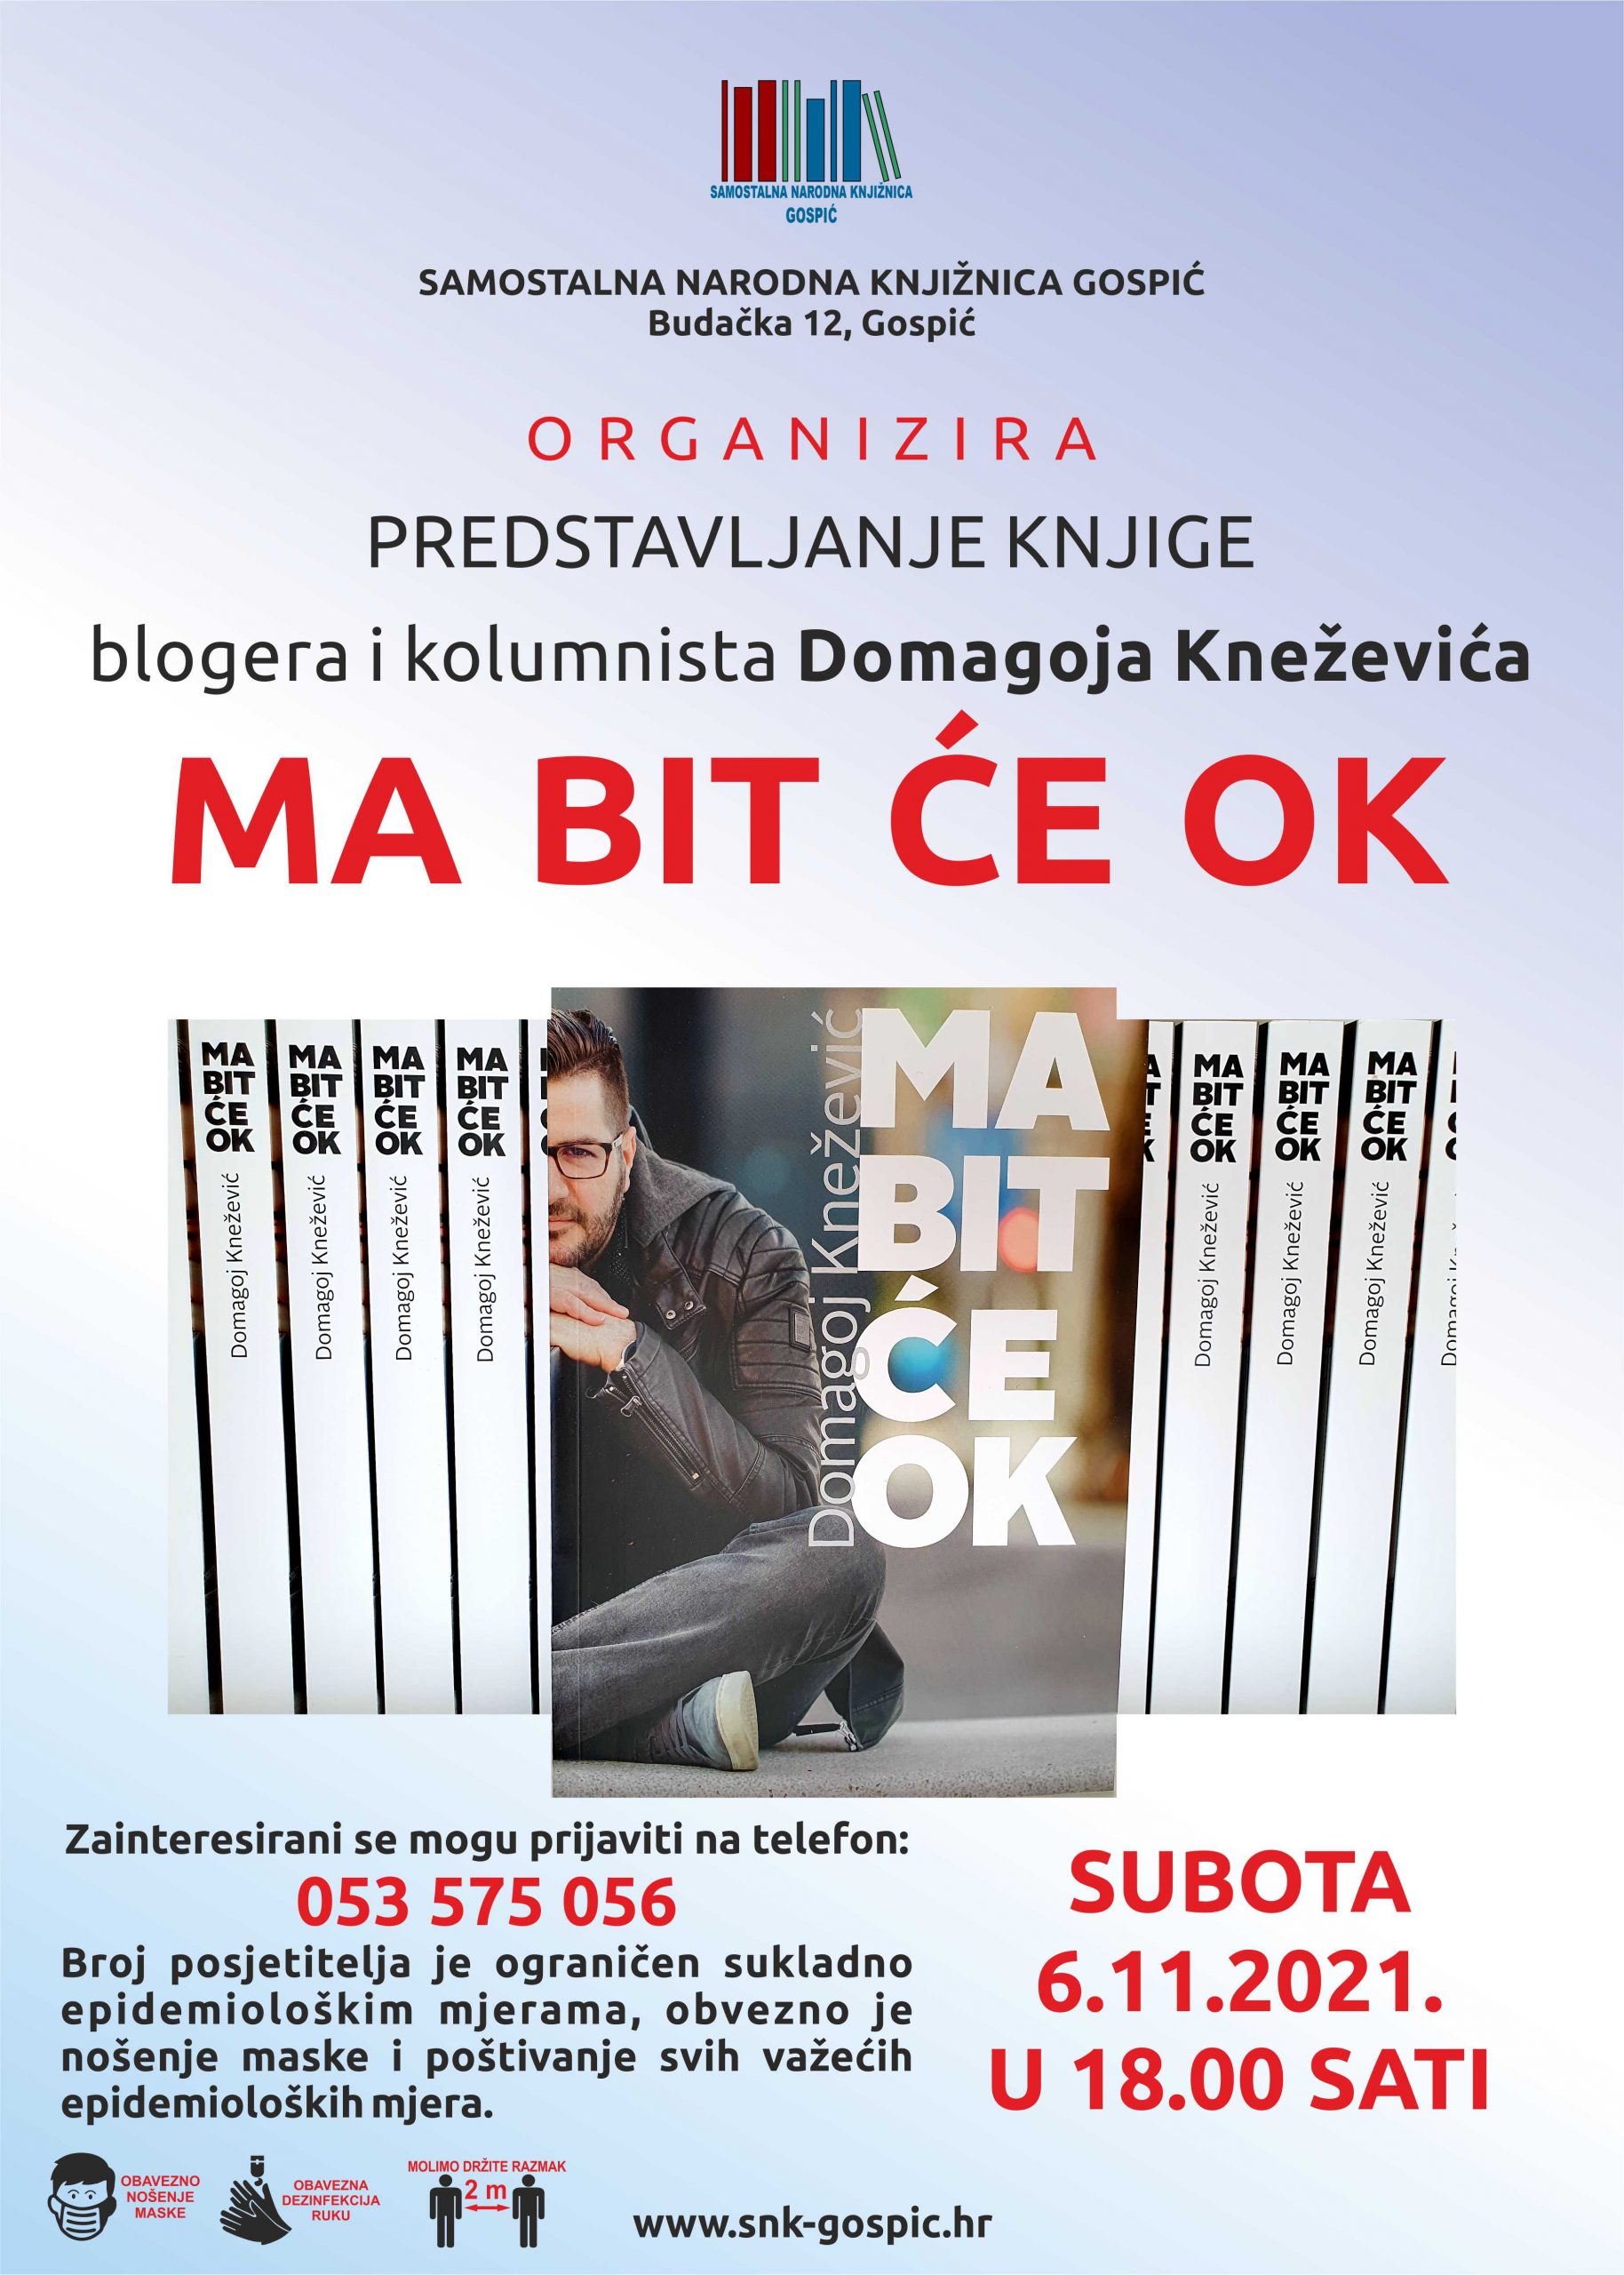 „MA BIT ĆE OK“ – Samostalna narodna knjižnica Gospić organizira gostovanje blogera i kolumnista Domagoja Kneževića u utorak 06.11.2021.